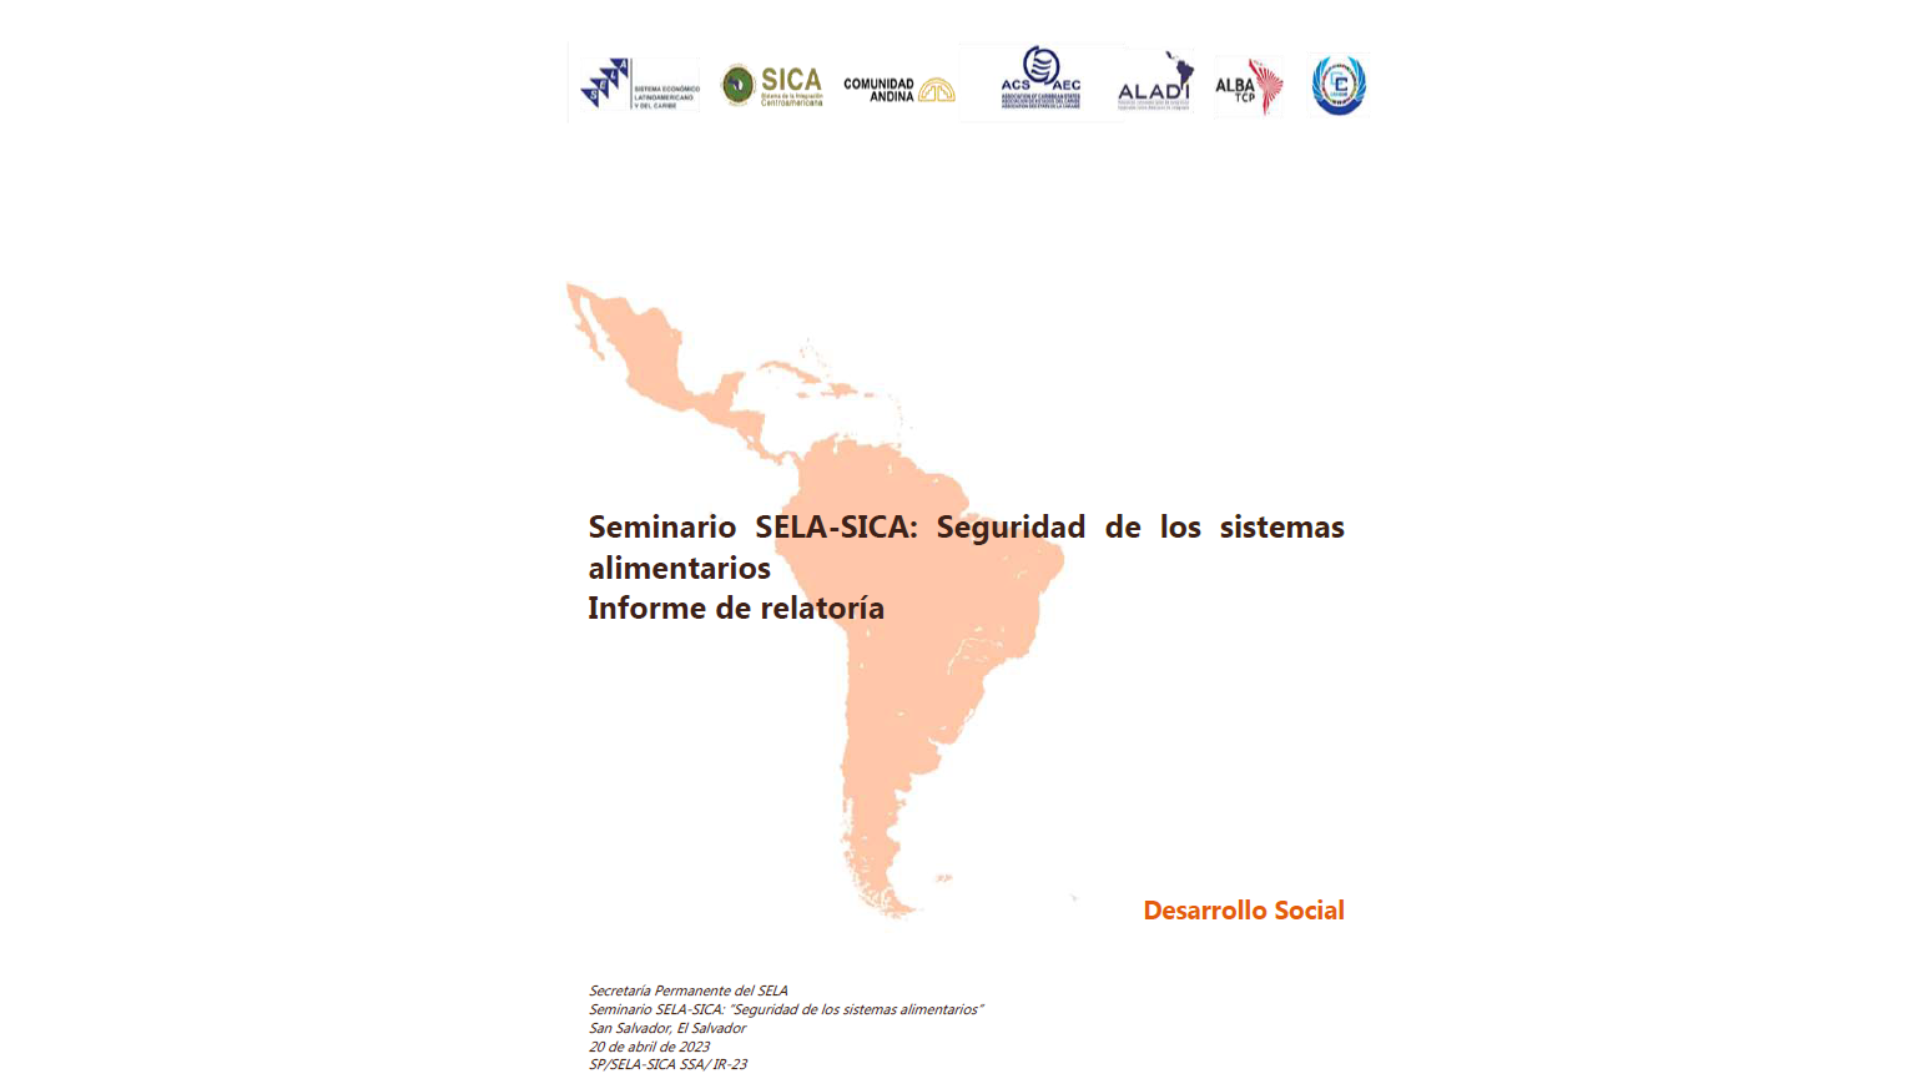 Seminario SELA-SICA: "Seguridad de los sistemas alimentarios" Informe de relatoría